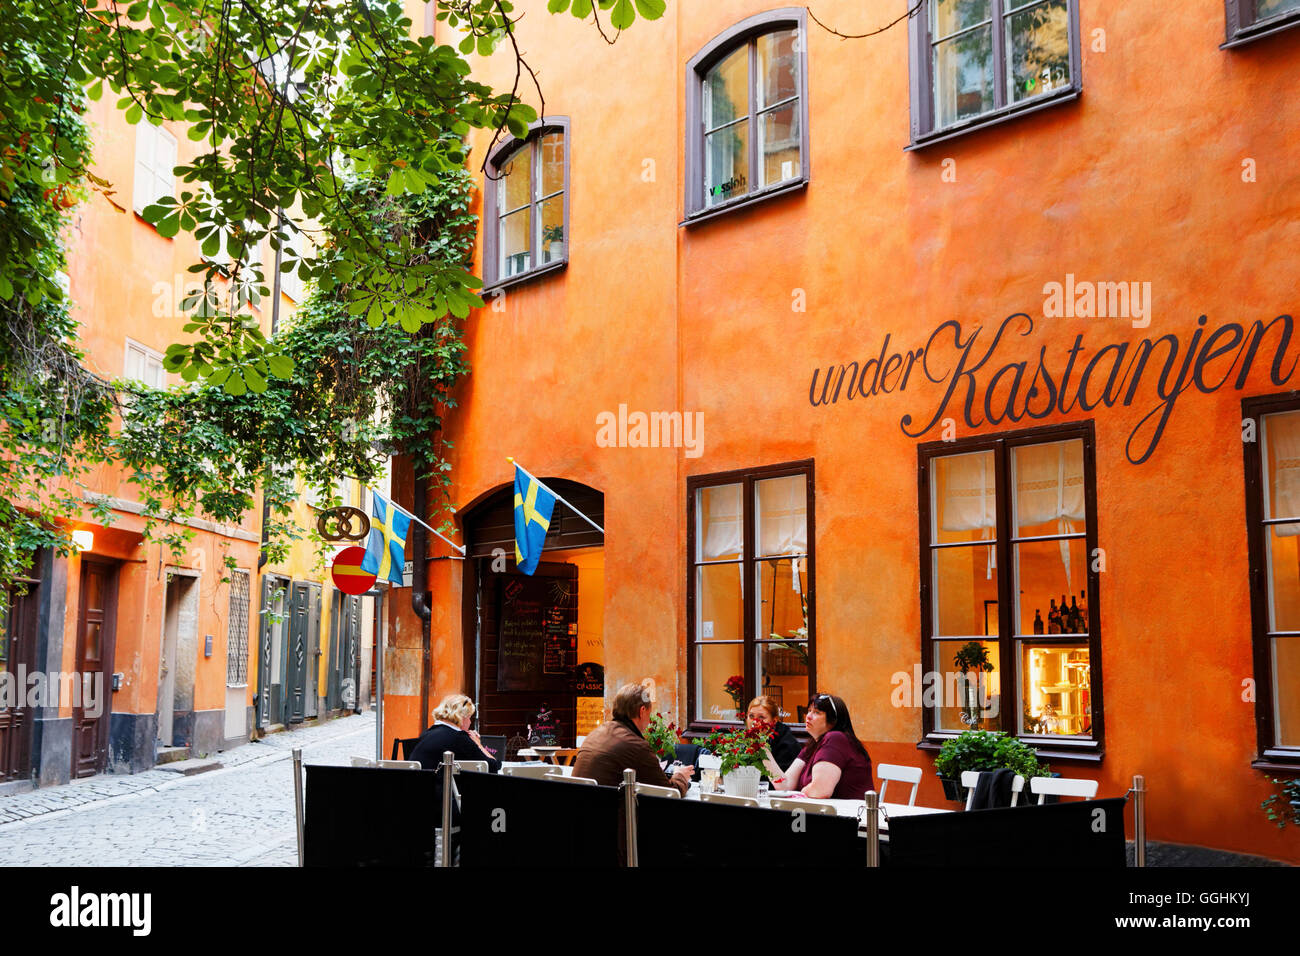 Cafe 'Under Kastanjen', Gamla Stan, Stockholm, Sweden Stock Photo